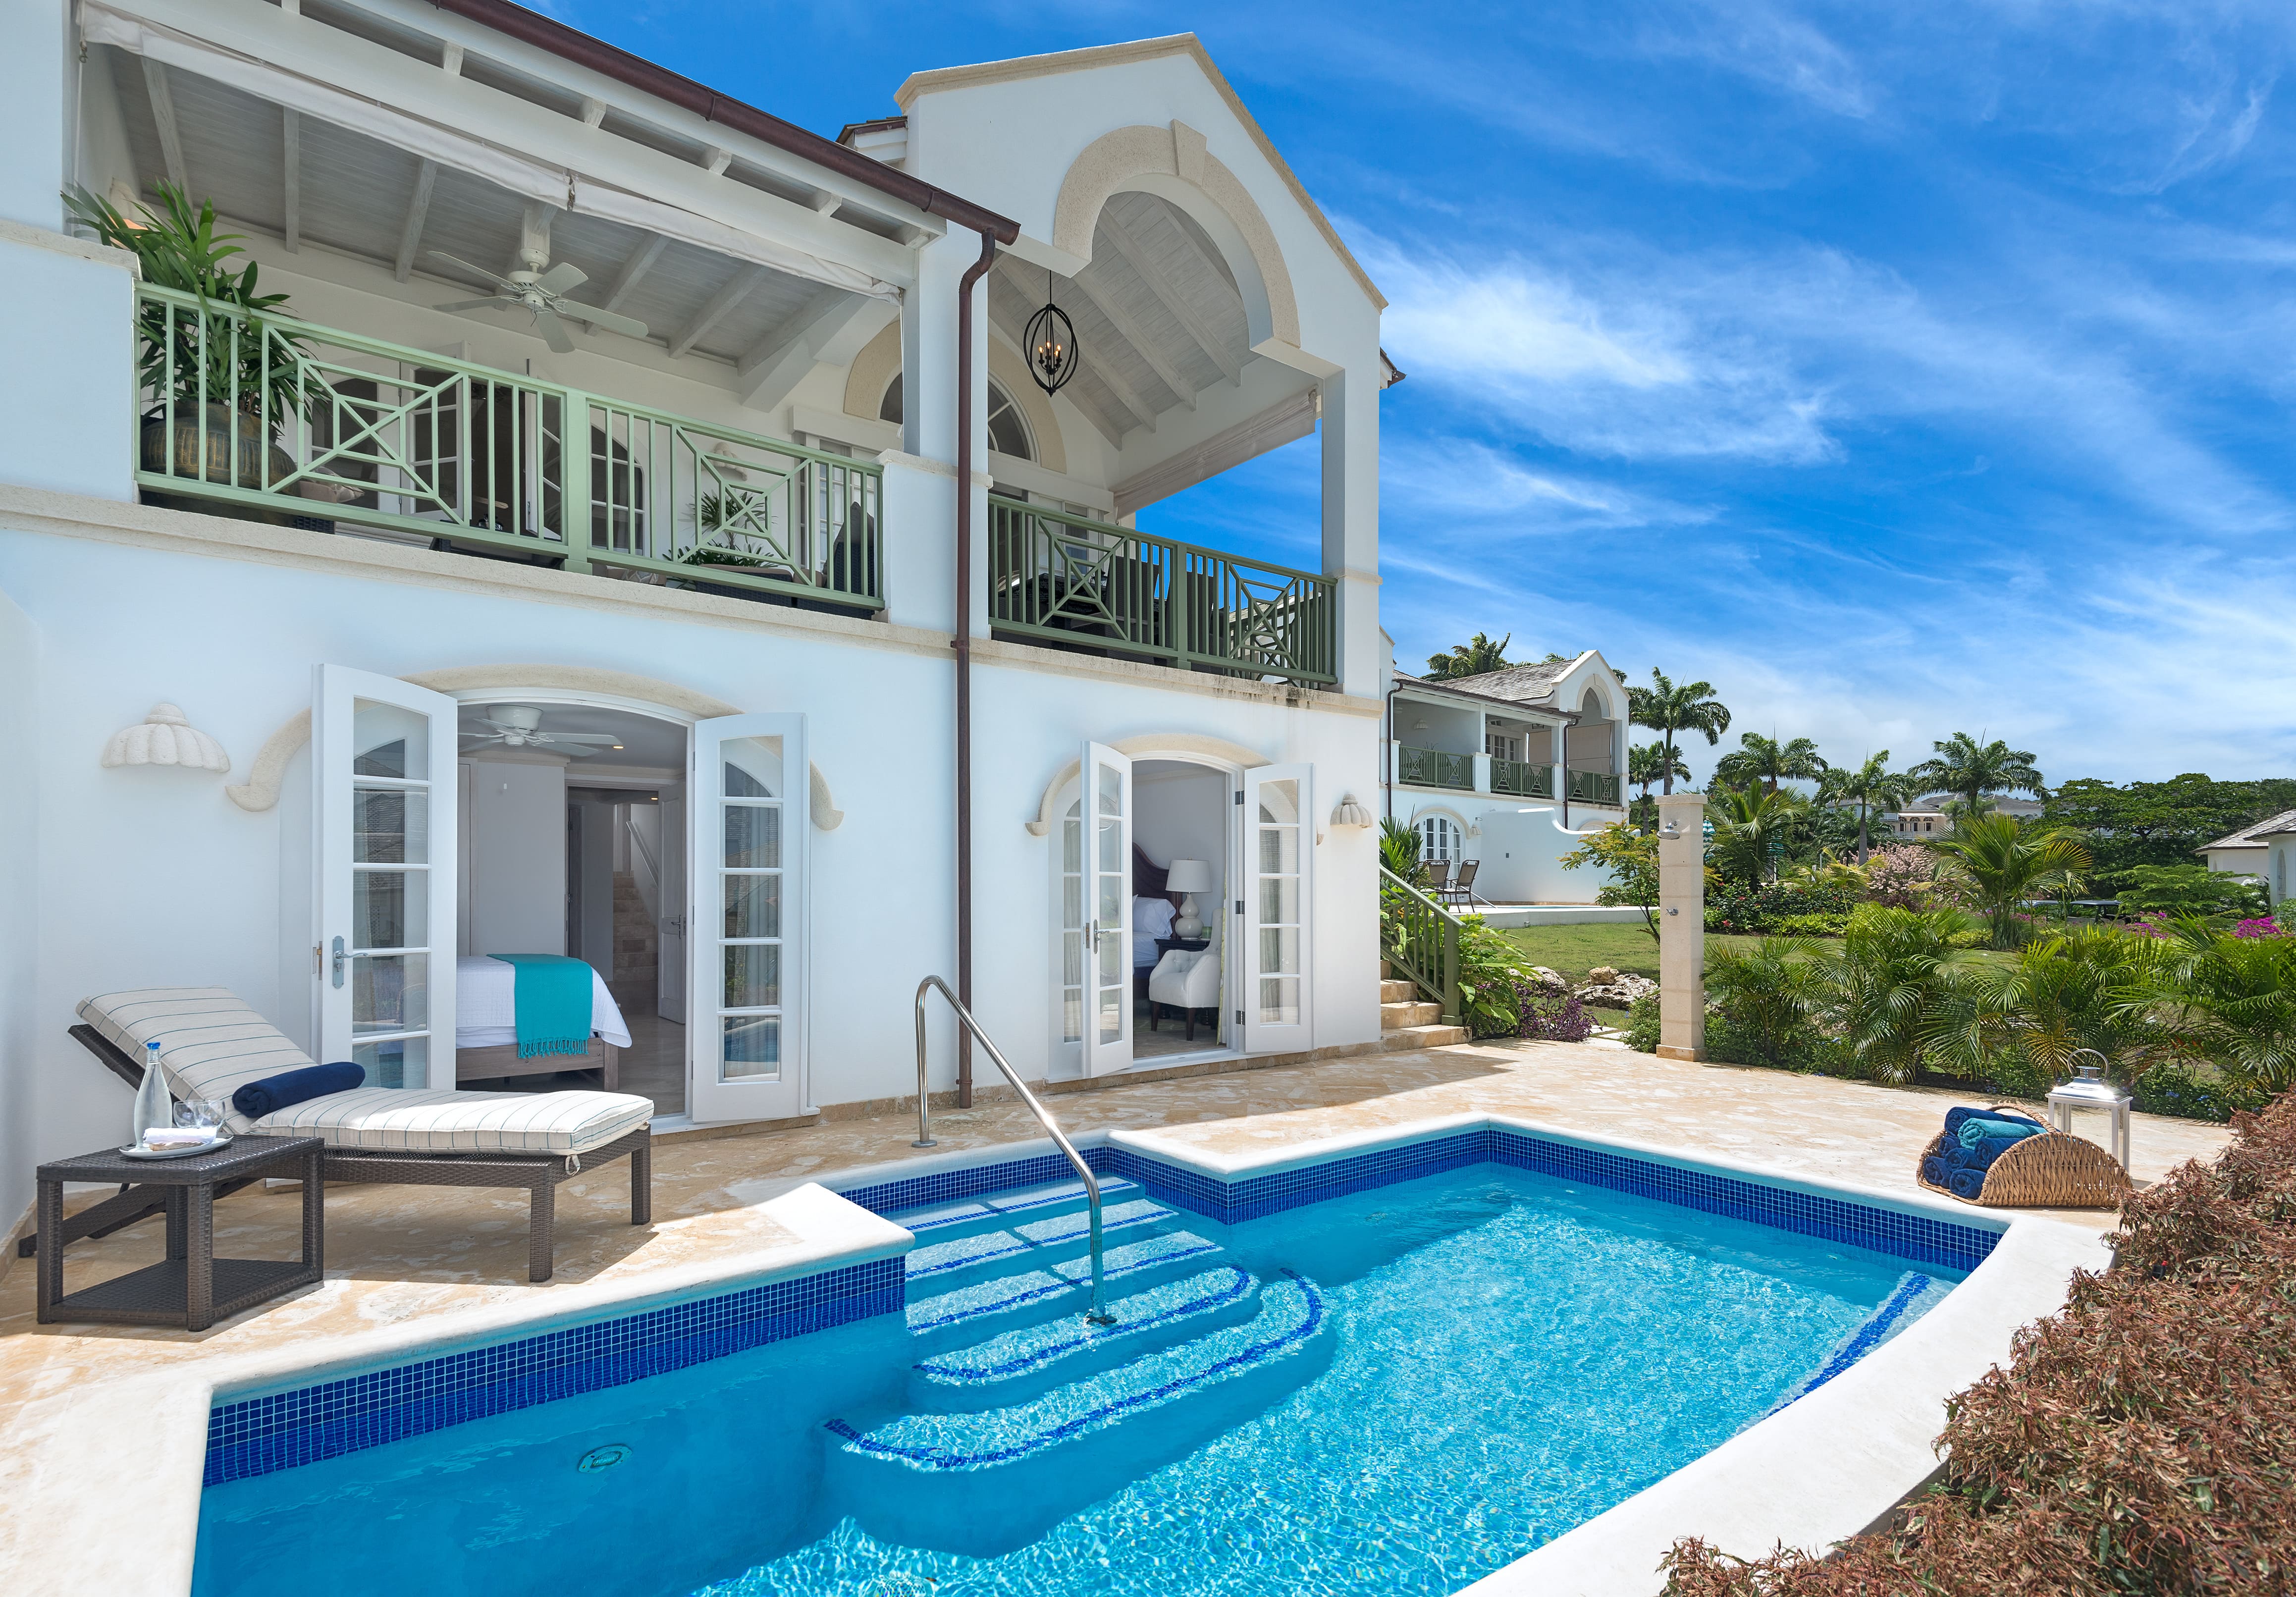 Xclusive Barbados,luxe vakantie, golf vakantie, royal westmoreland,saint james, luxe golfvilla, vakantie barbados,cane, 6 tot 8 personen, golfvilla, barbados vakantie